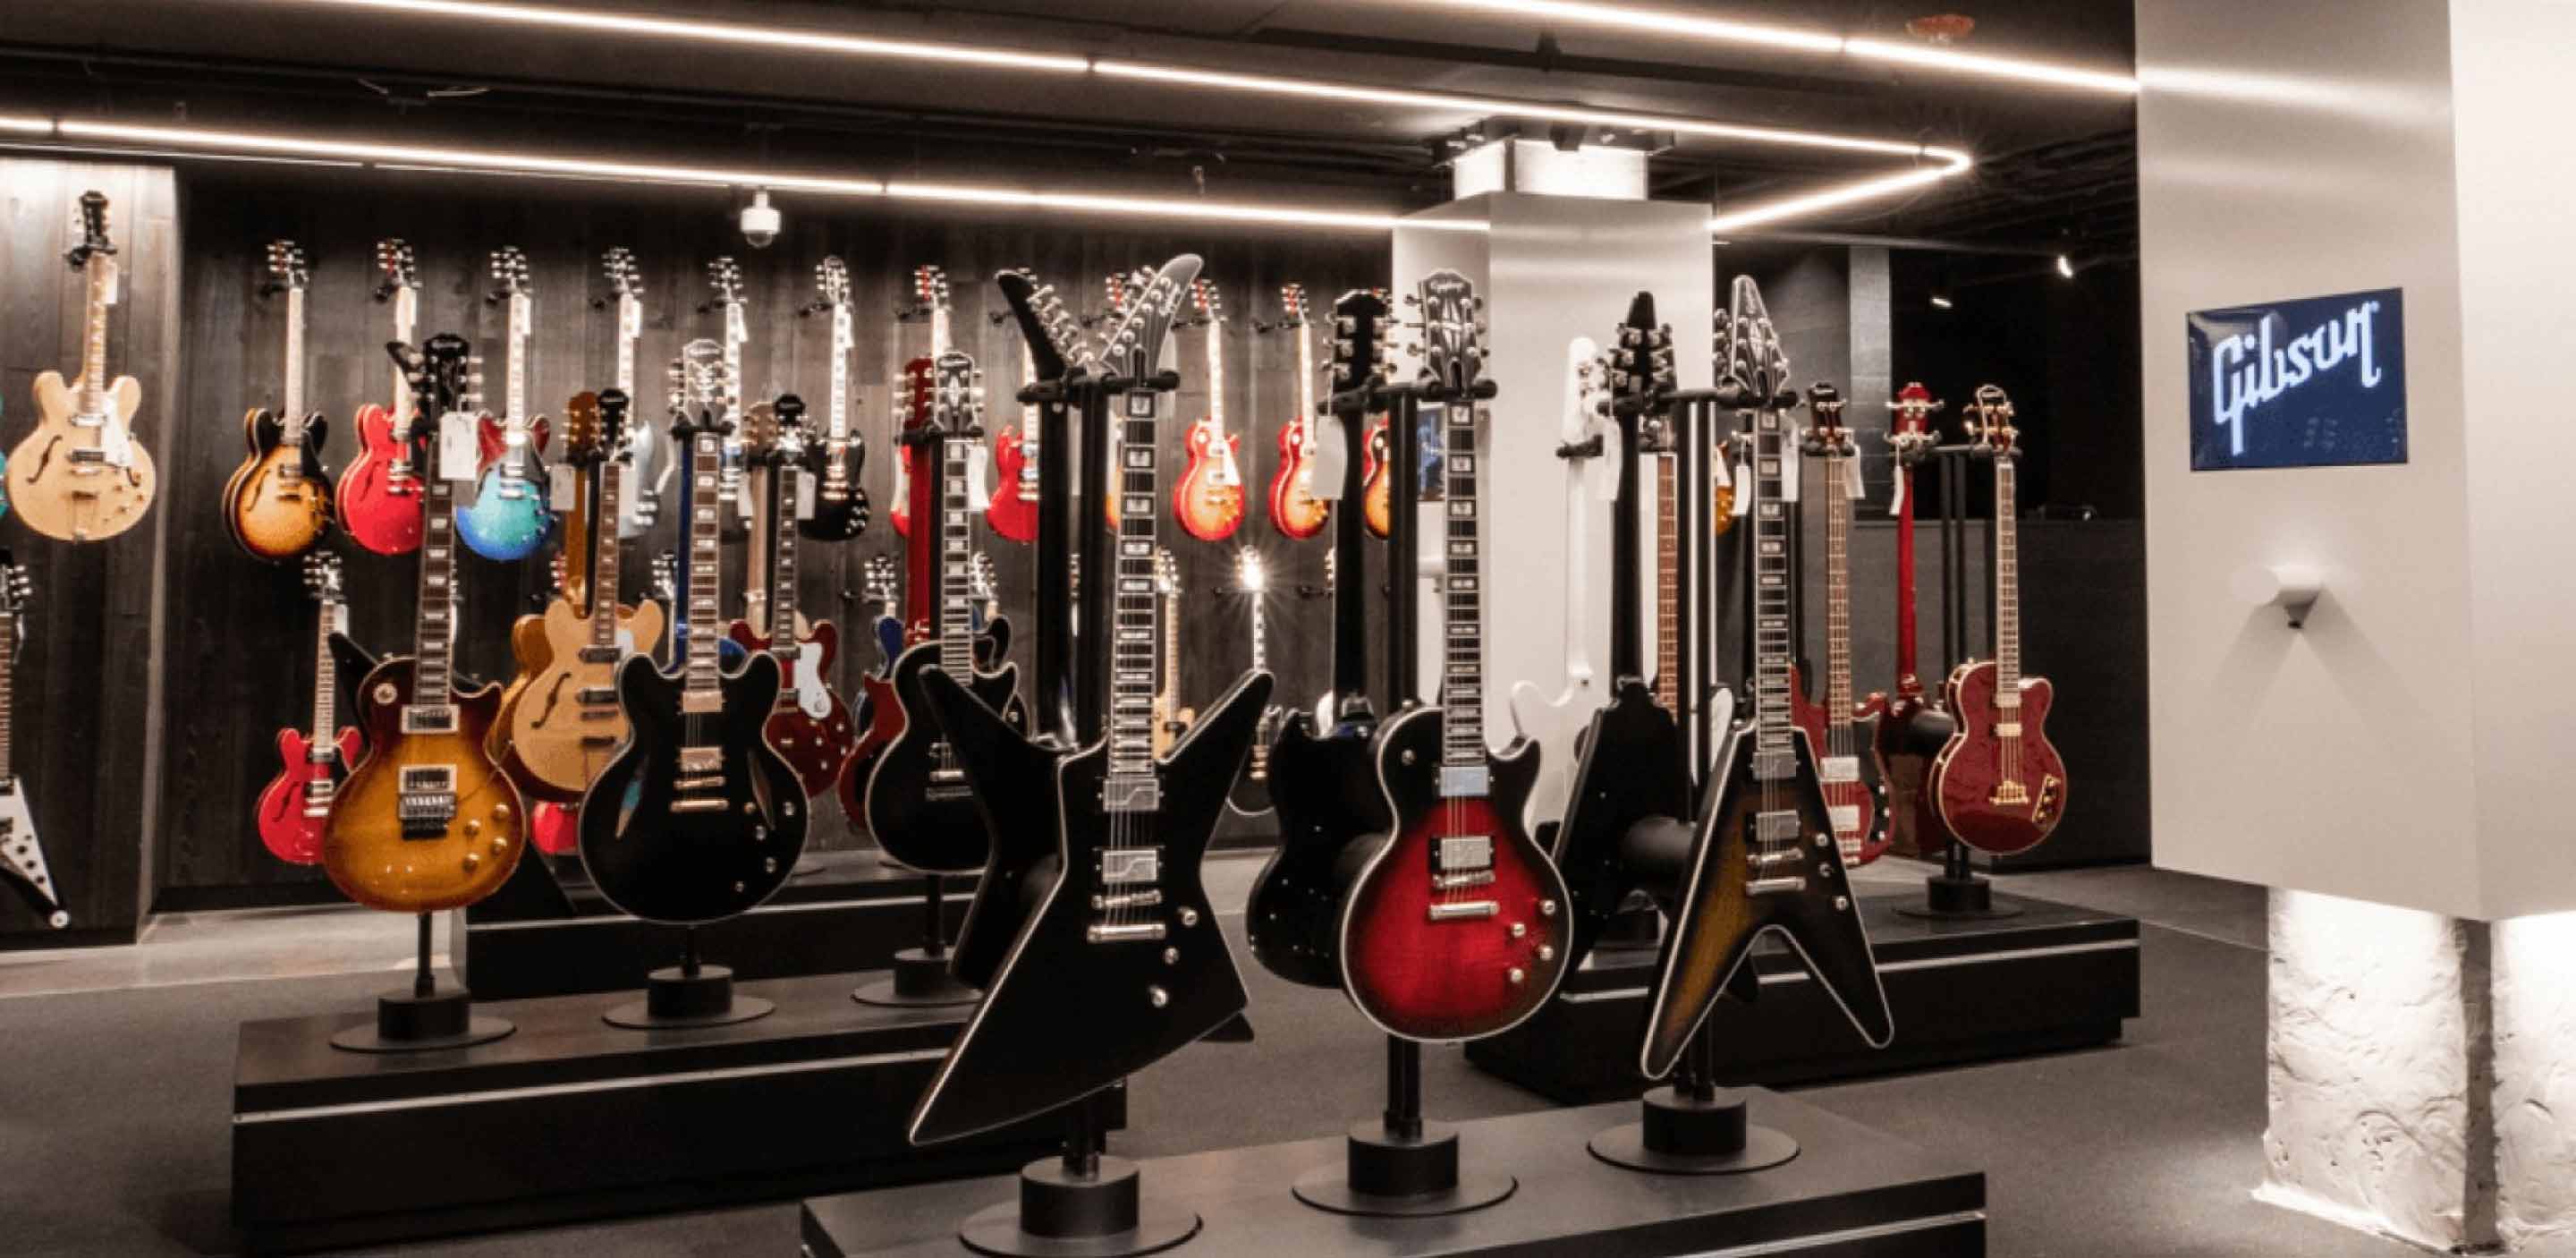 Imagen de guitarras de la marca Gibson 